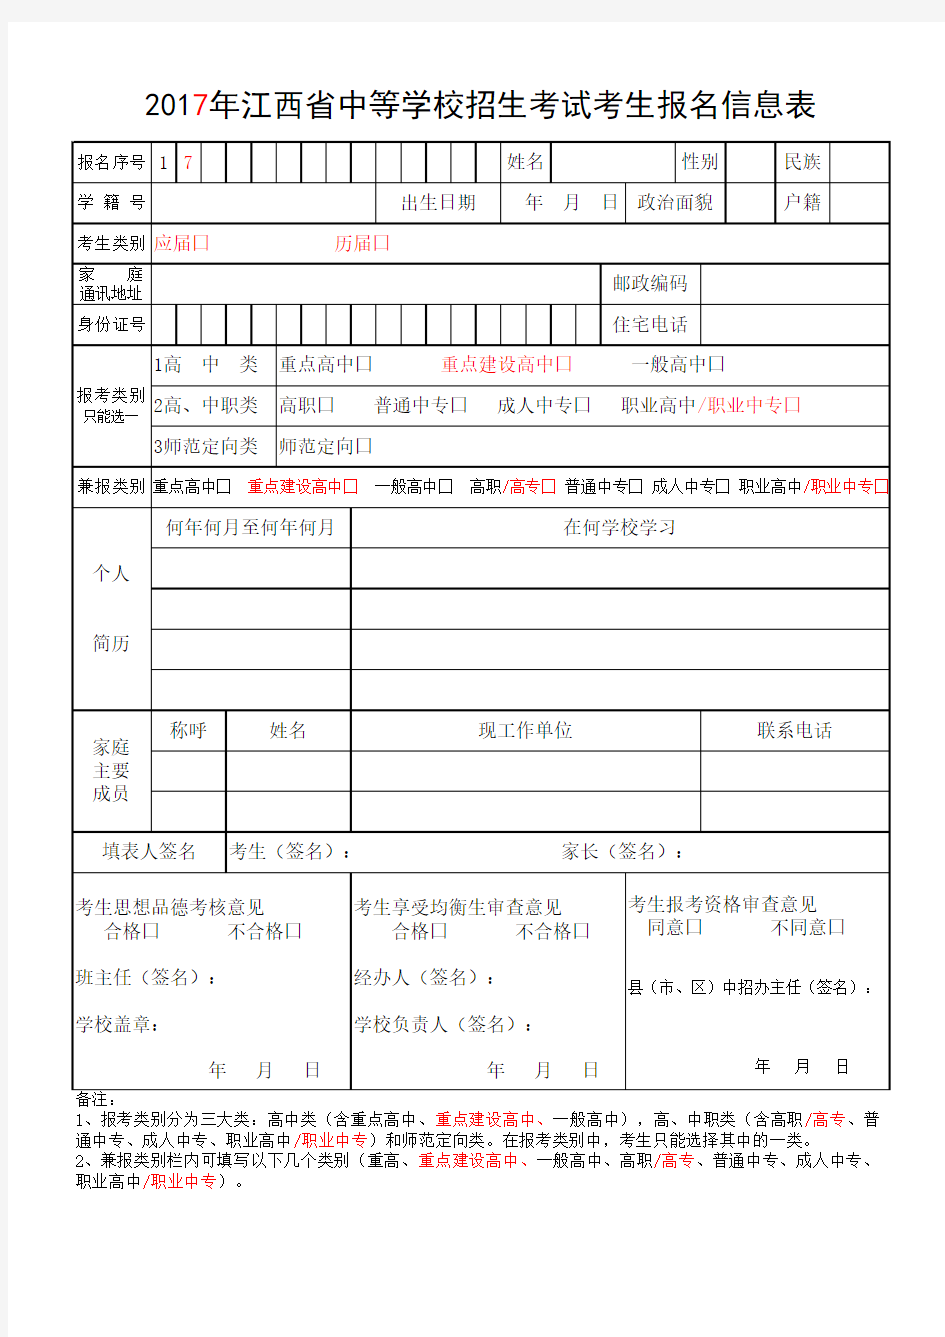 2017年江西省中等学校招生考试考生报名信息表